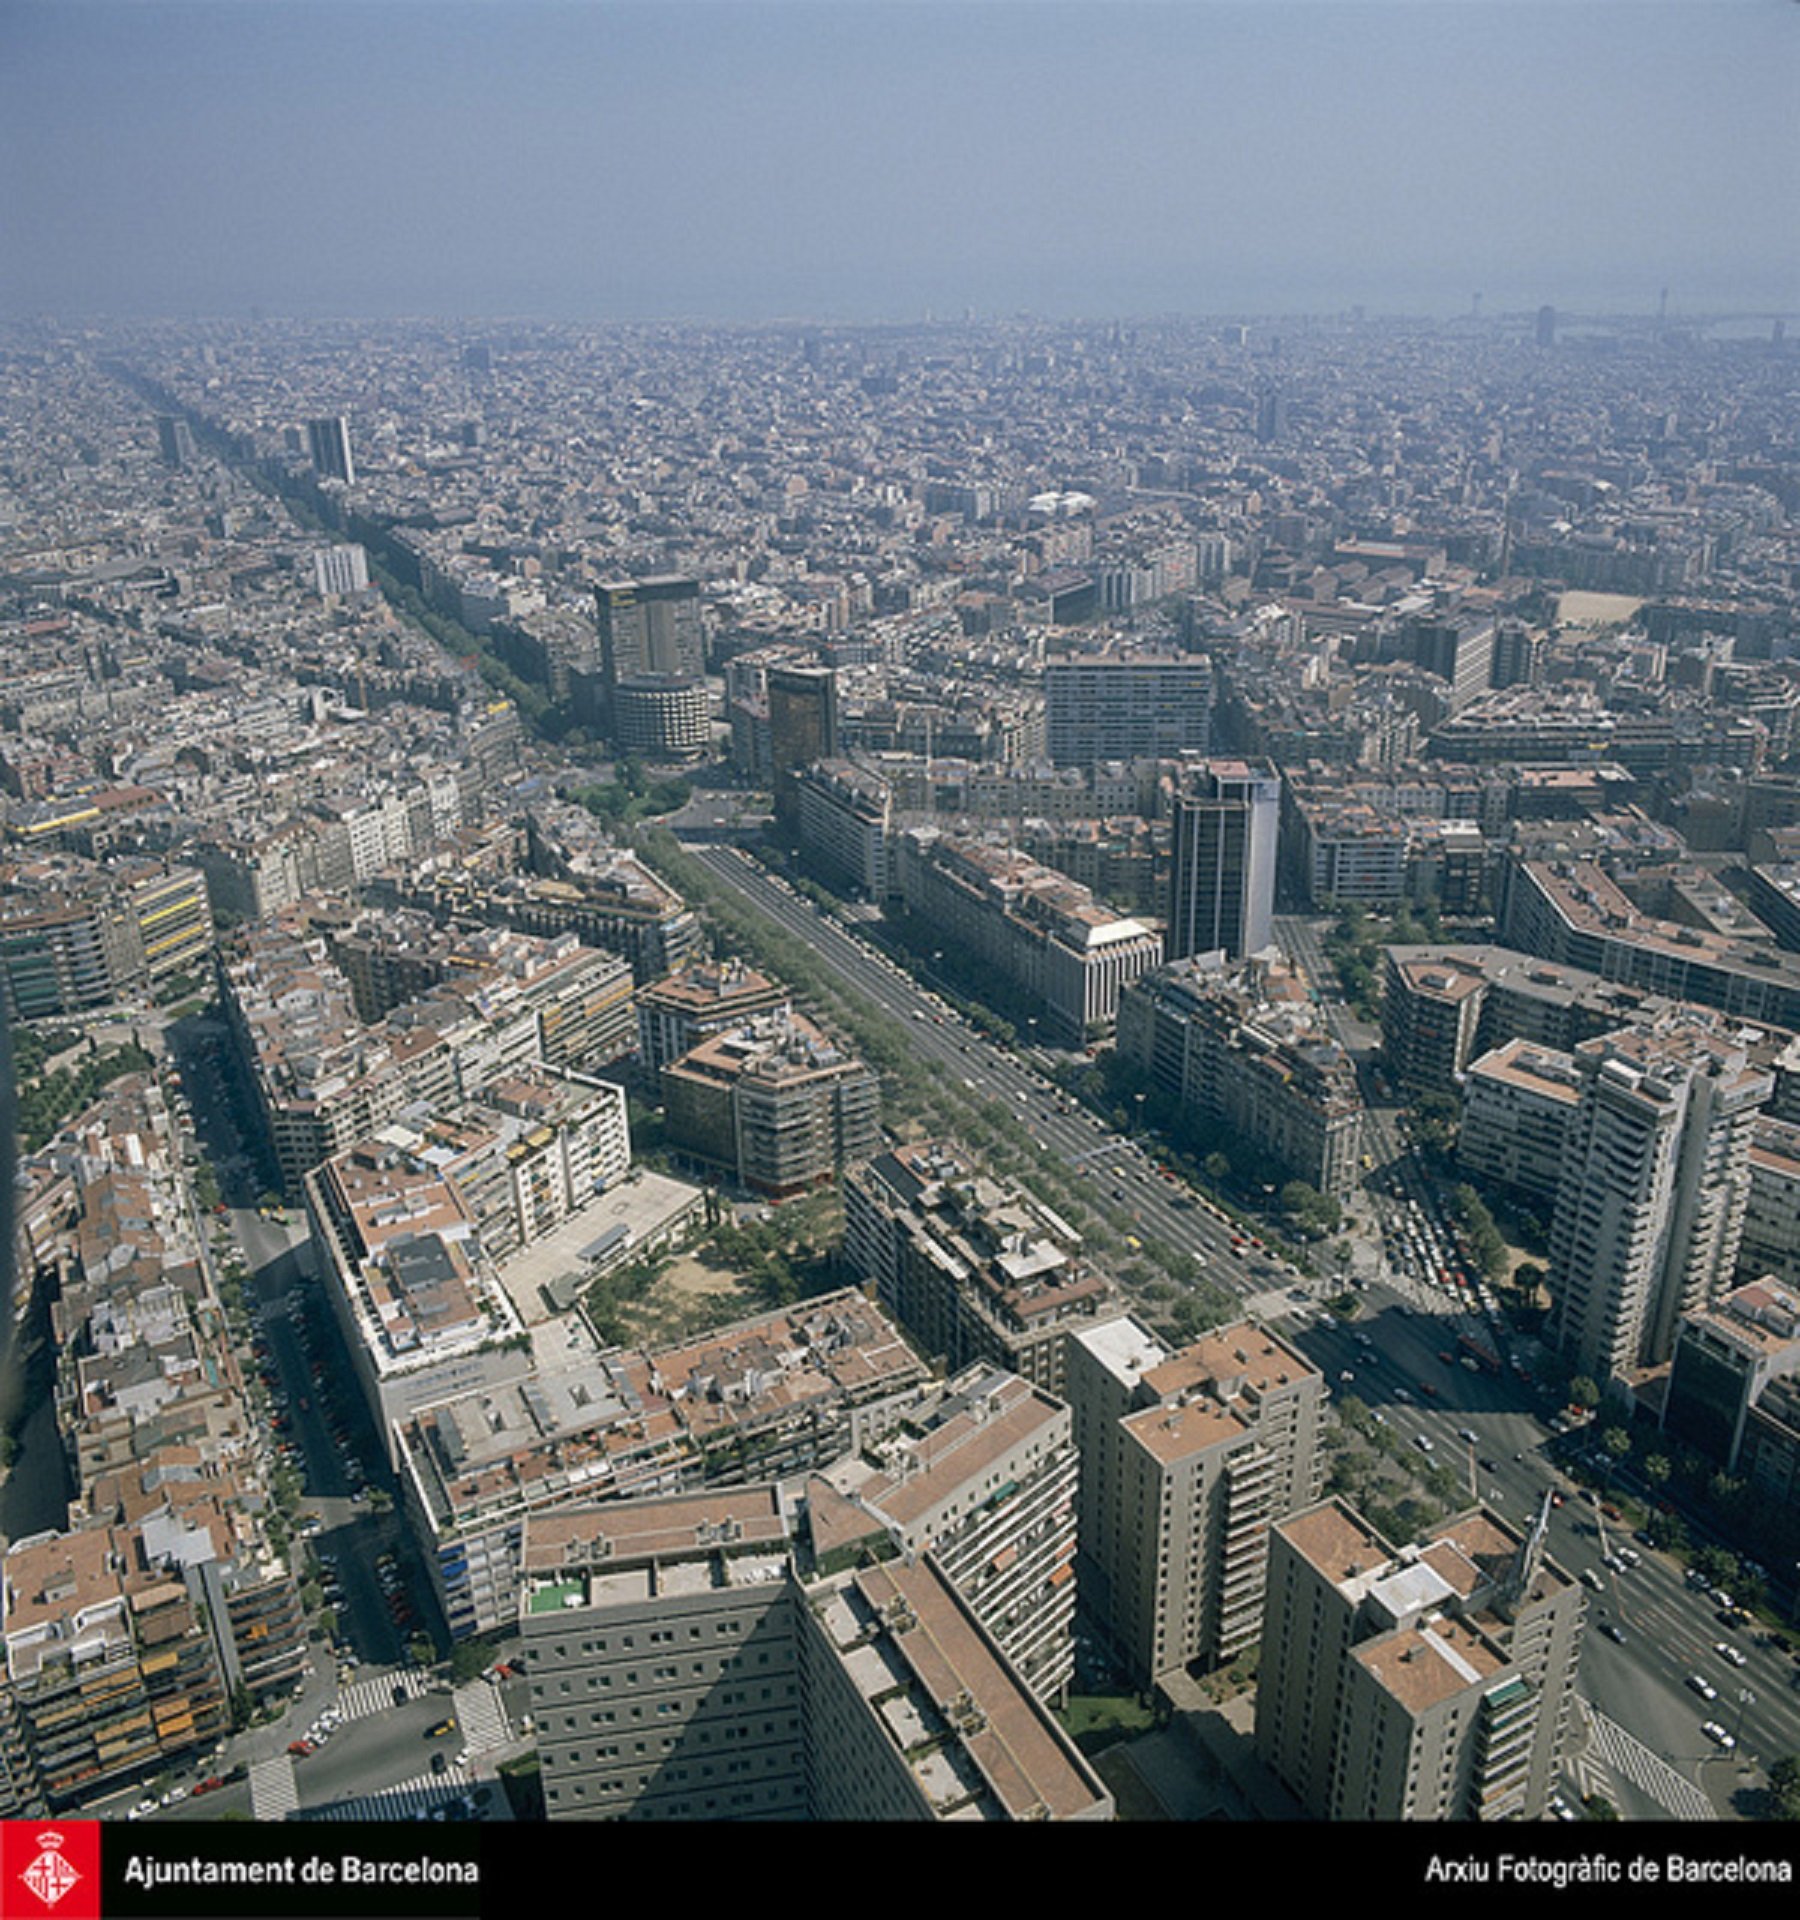 L'atur baixa de 70.000 persones a la ciutat Barcelona, un 26,4% menys que 2020